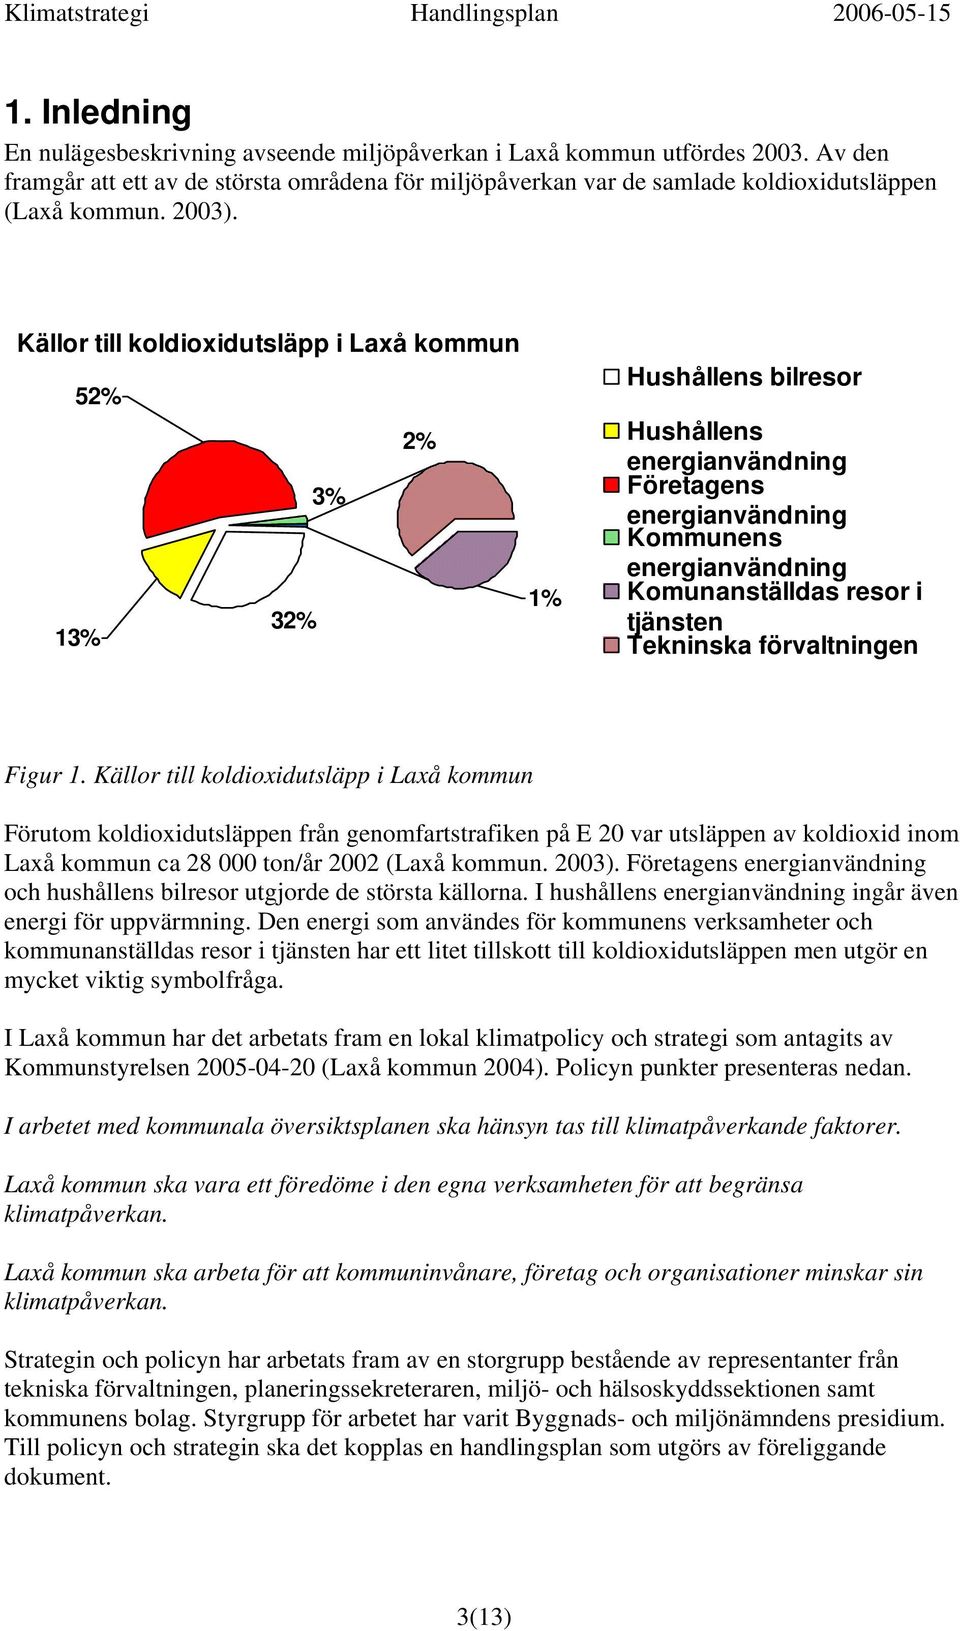 Källor till koldioxidutsläpp i Laxå kommun 52% 2% 3% 1% 32% 13% Hushållens bilresor Hushållens energianvändning Företagens energianvändning Kommunens energianvändning Komunanställdas resor i tjänsten